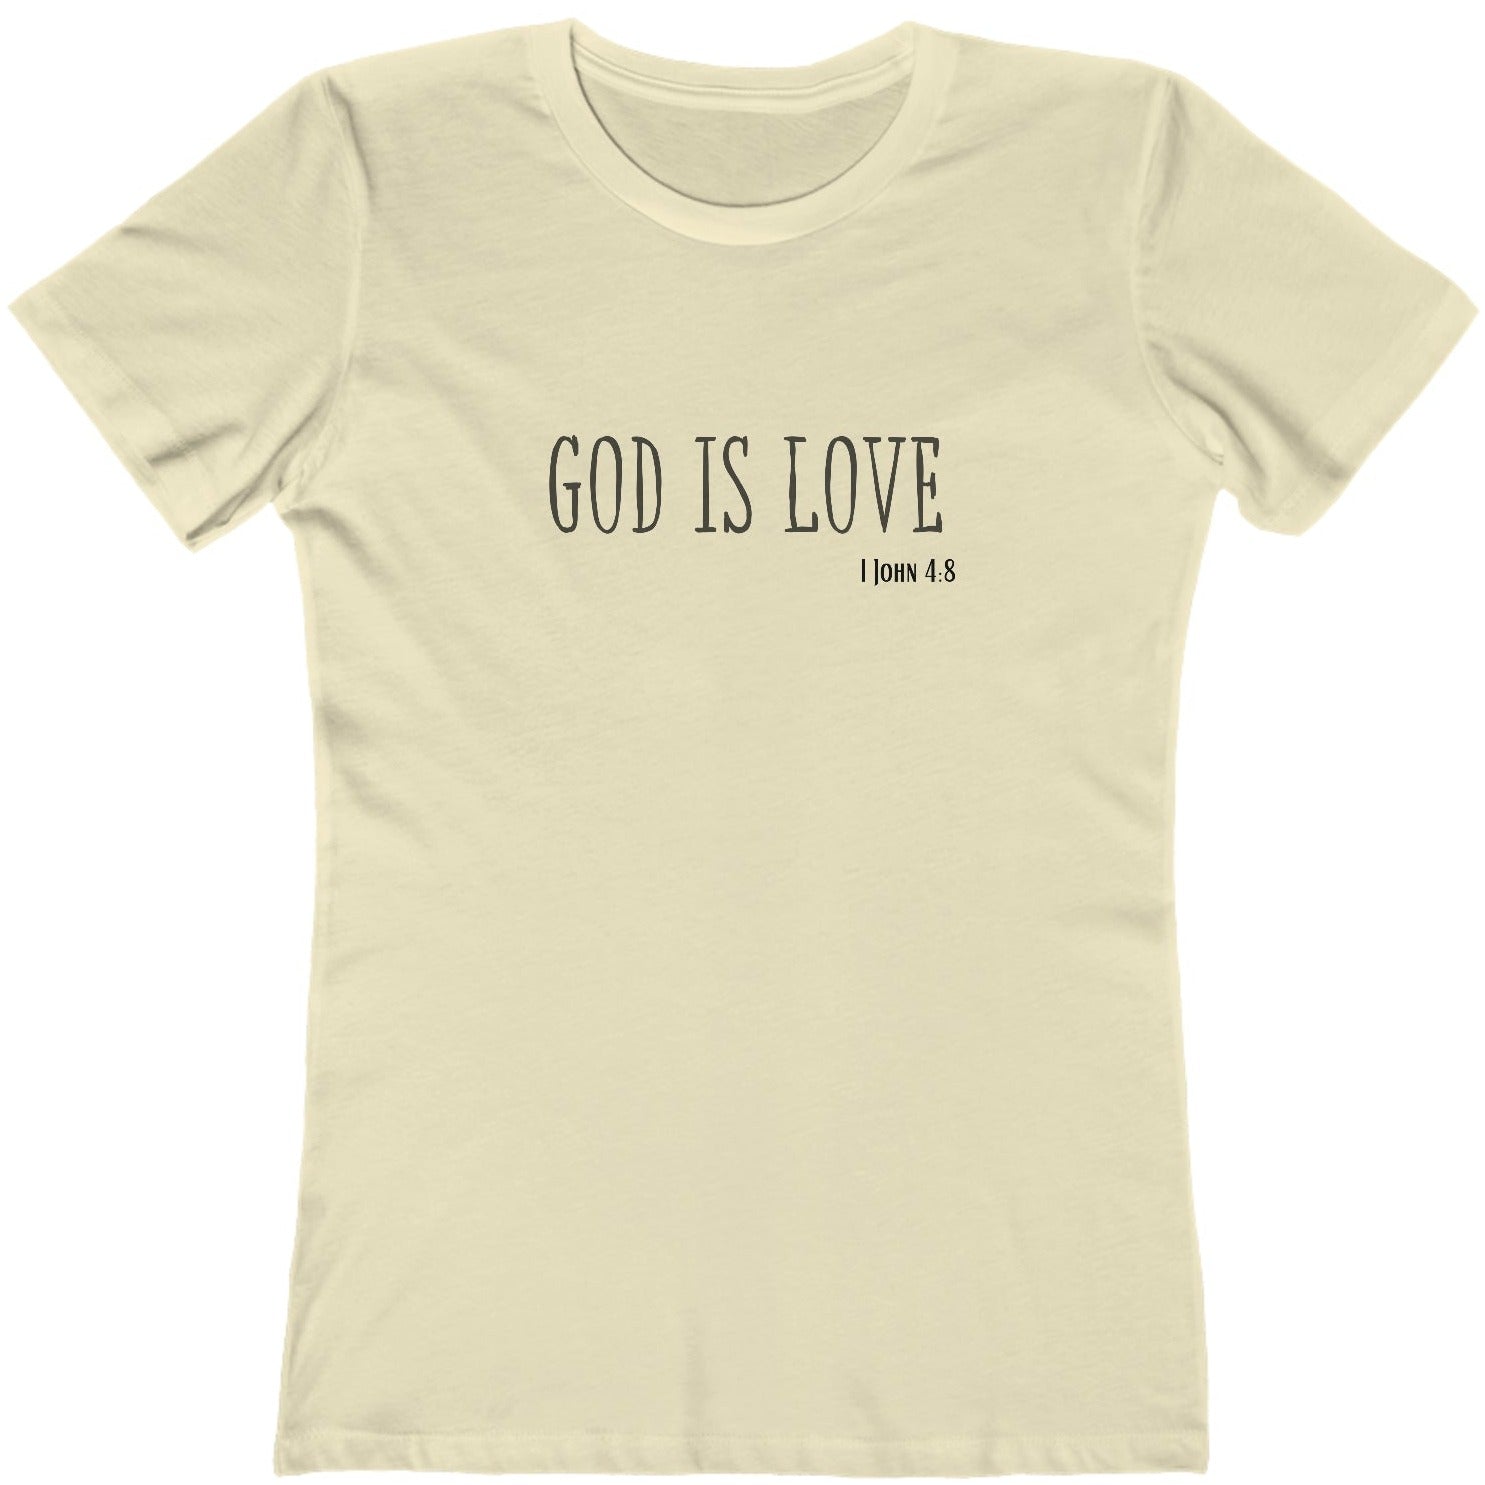 1 John 4:8 God is Love, Christian T-shirt for Women natural